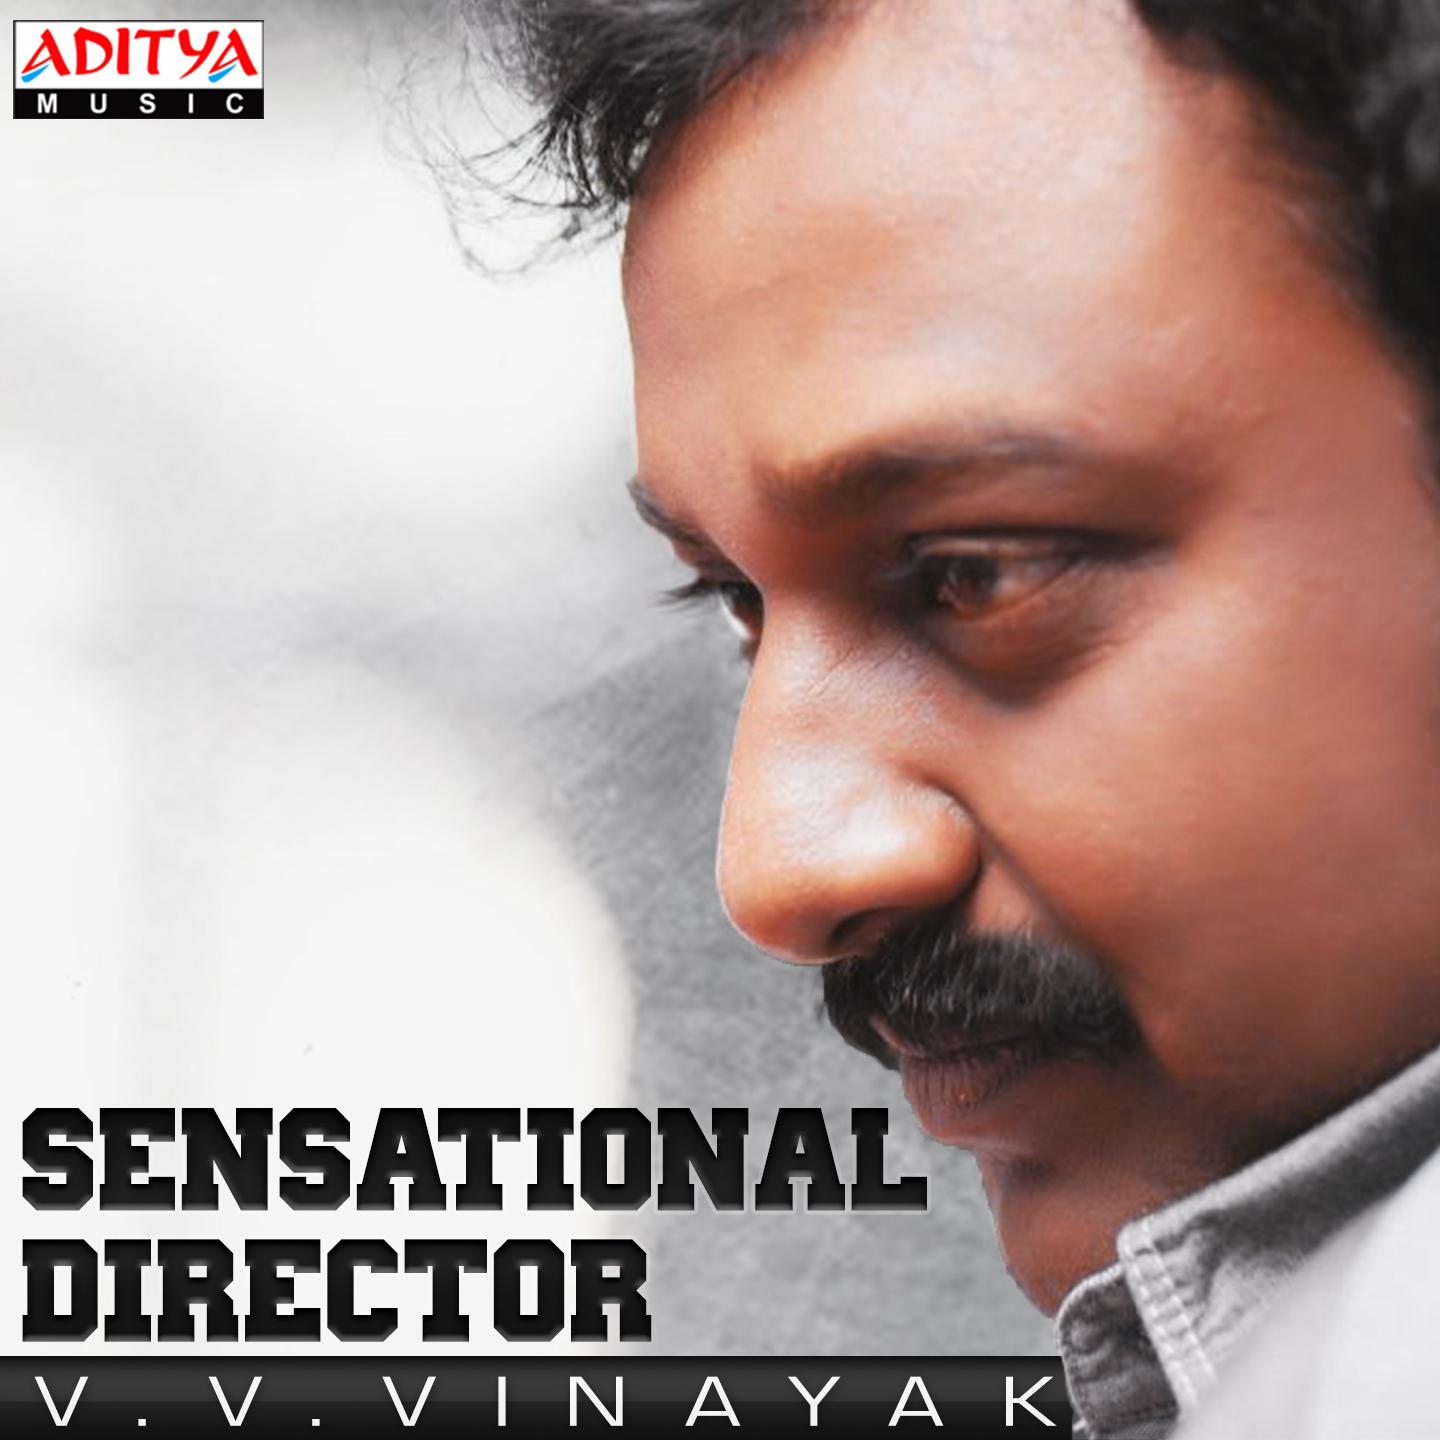 Sensational Director V.V. Vinayak